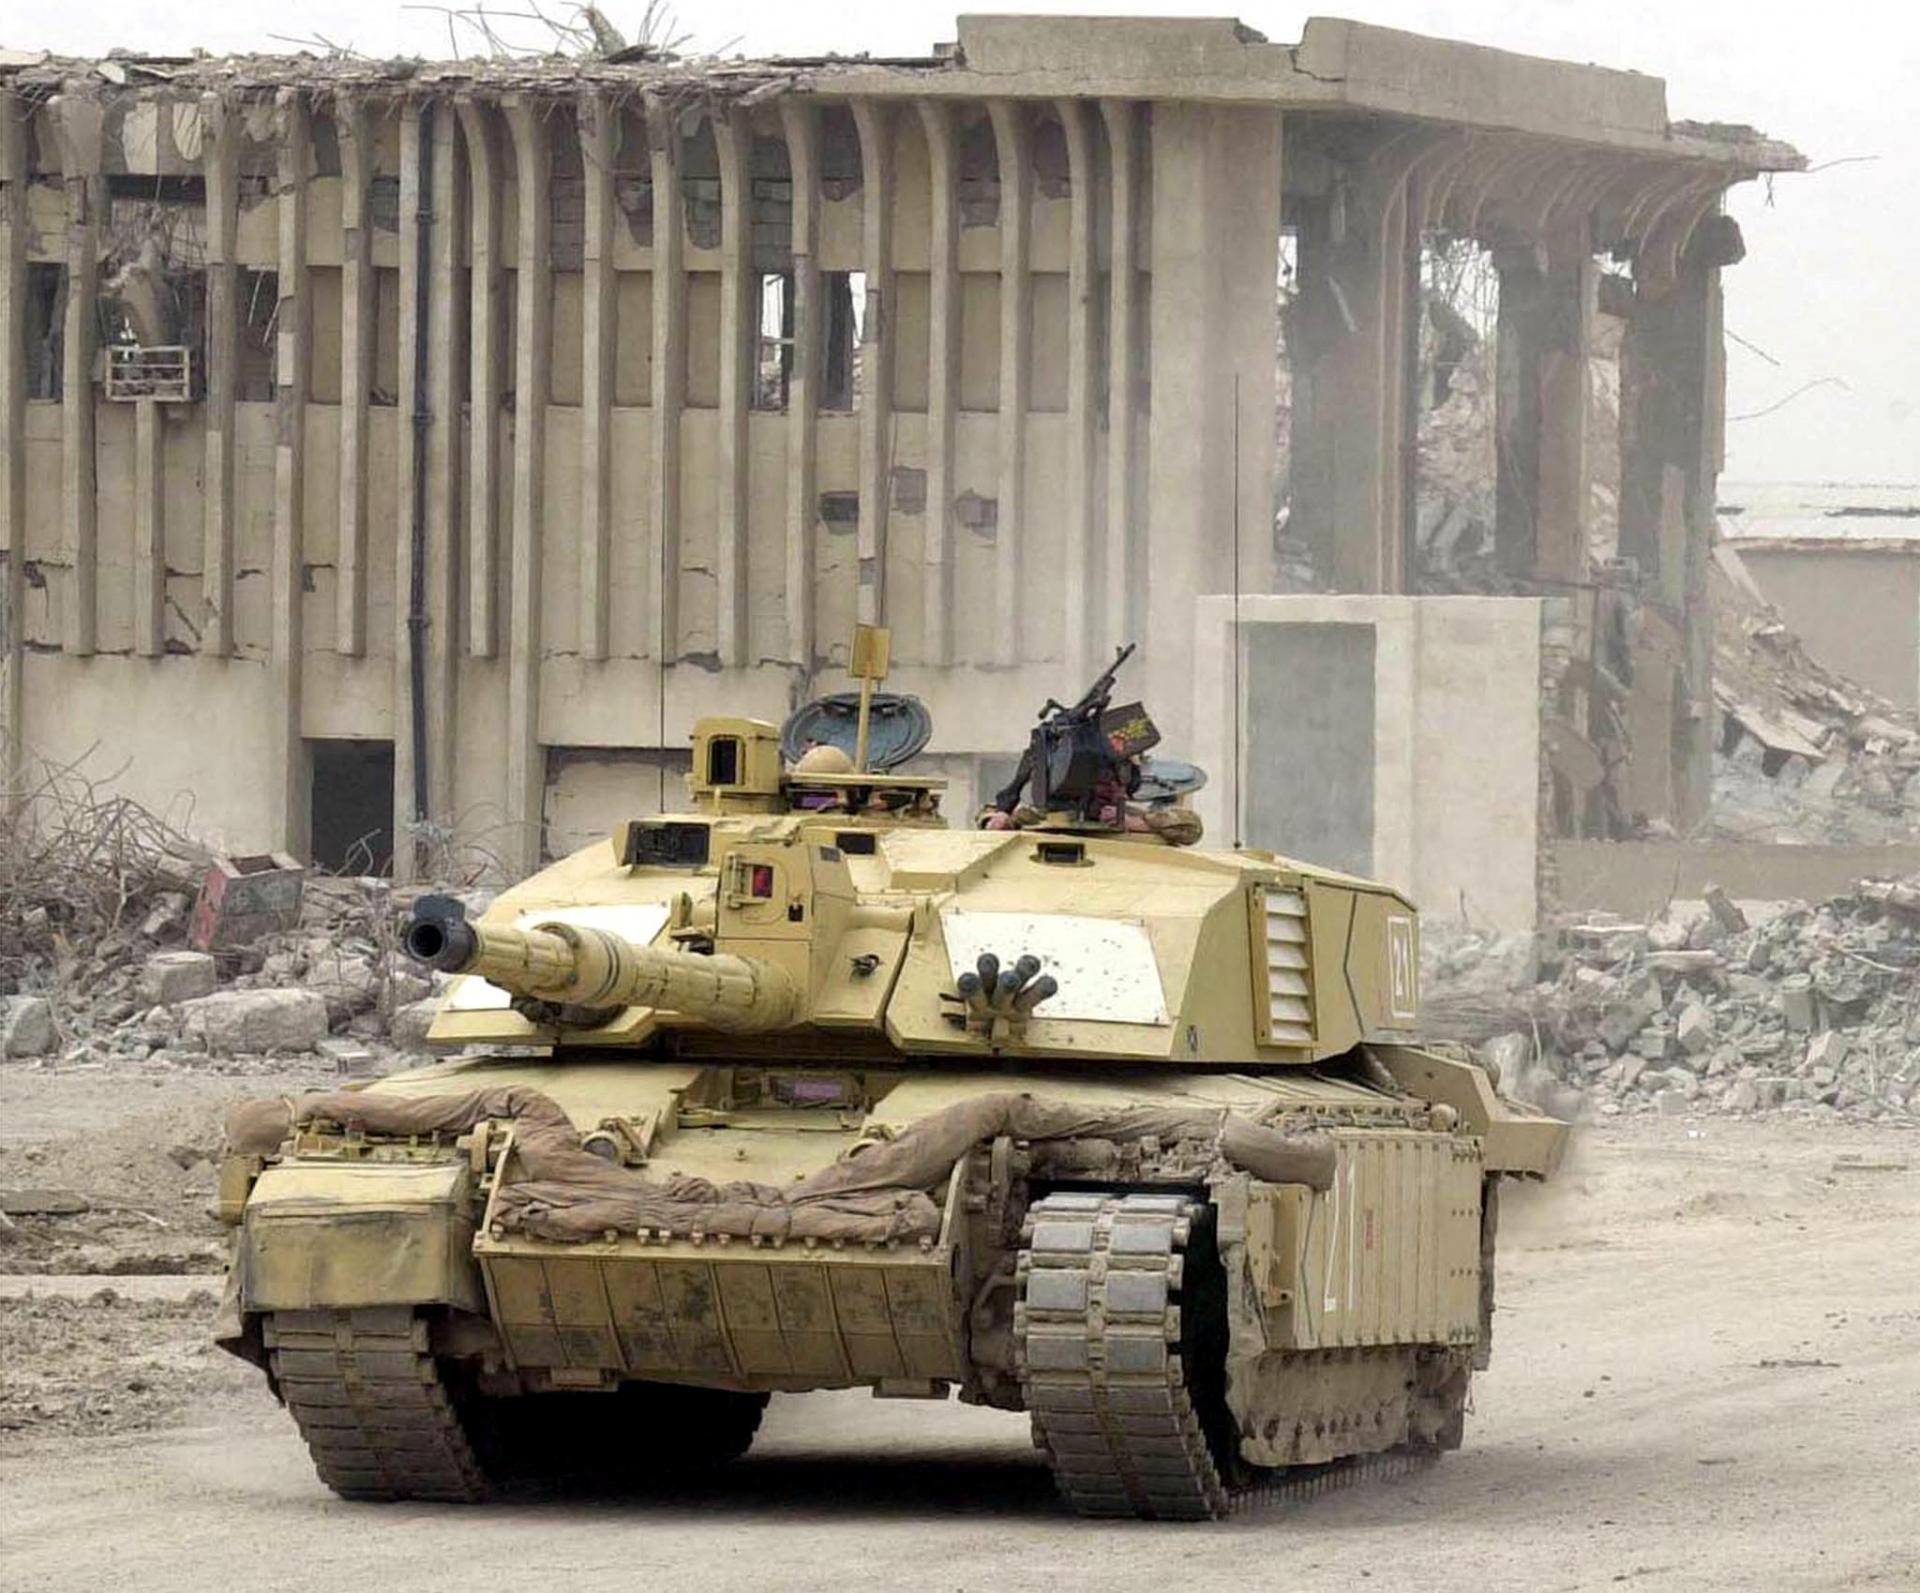 Británia pošle Ukrajine moderné bojové tanky. Stane sa prvou západnou krajinou, ktorá tak spraví